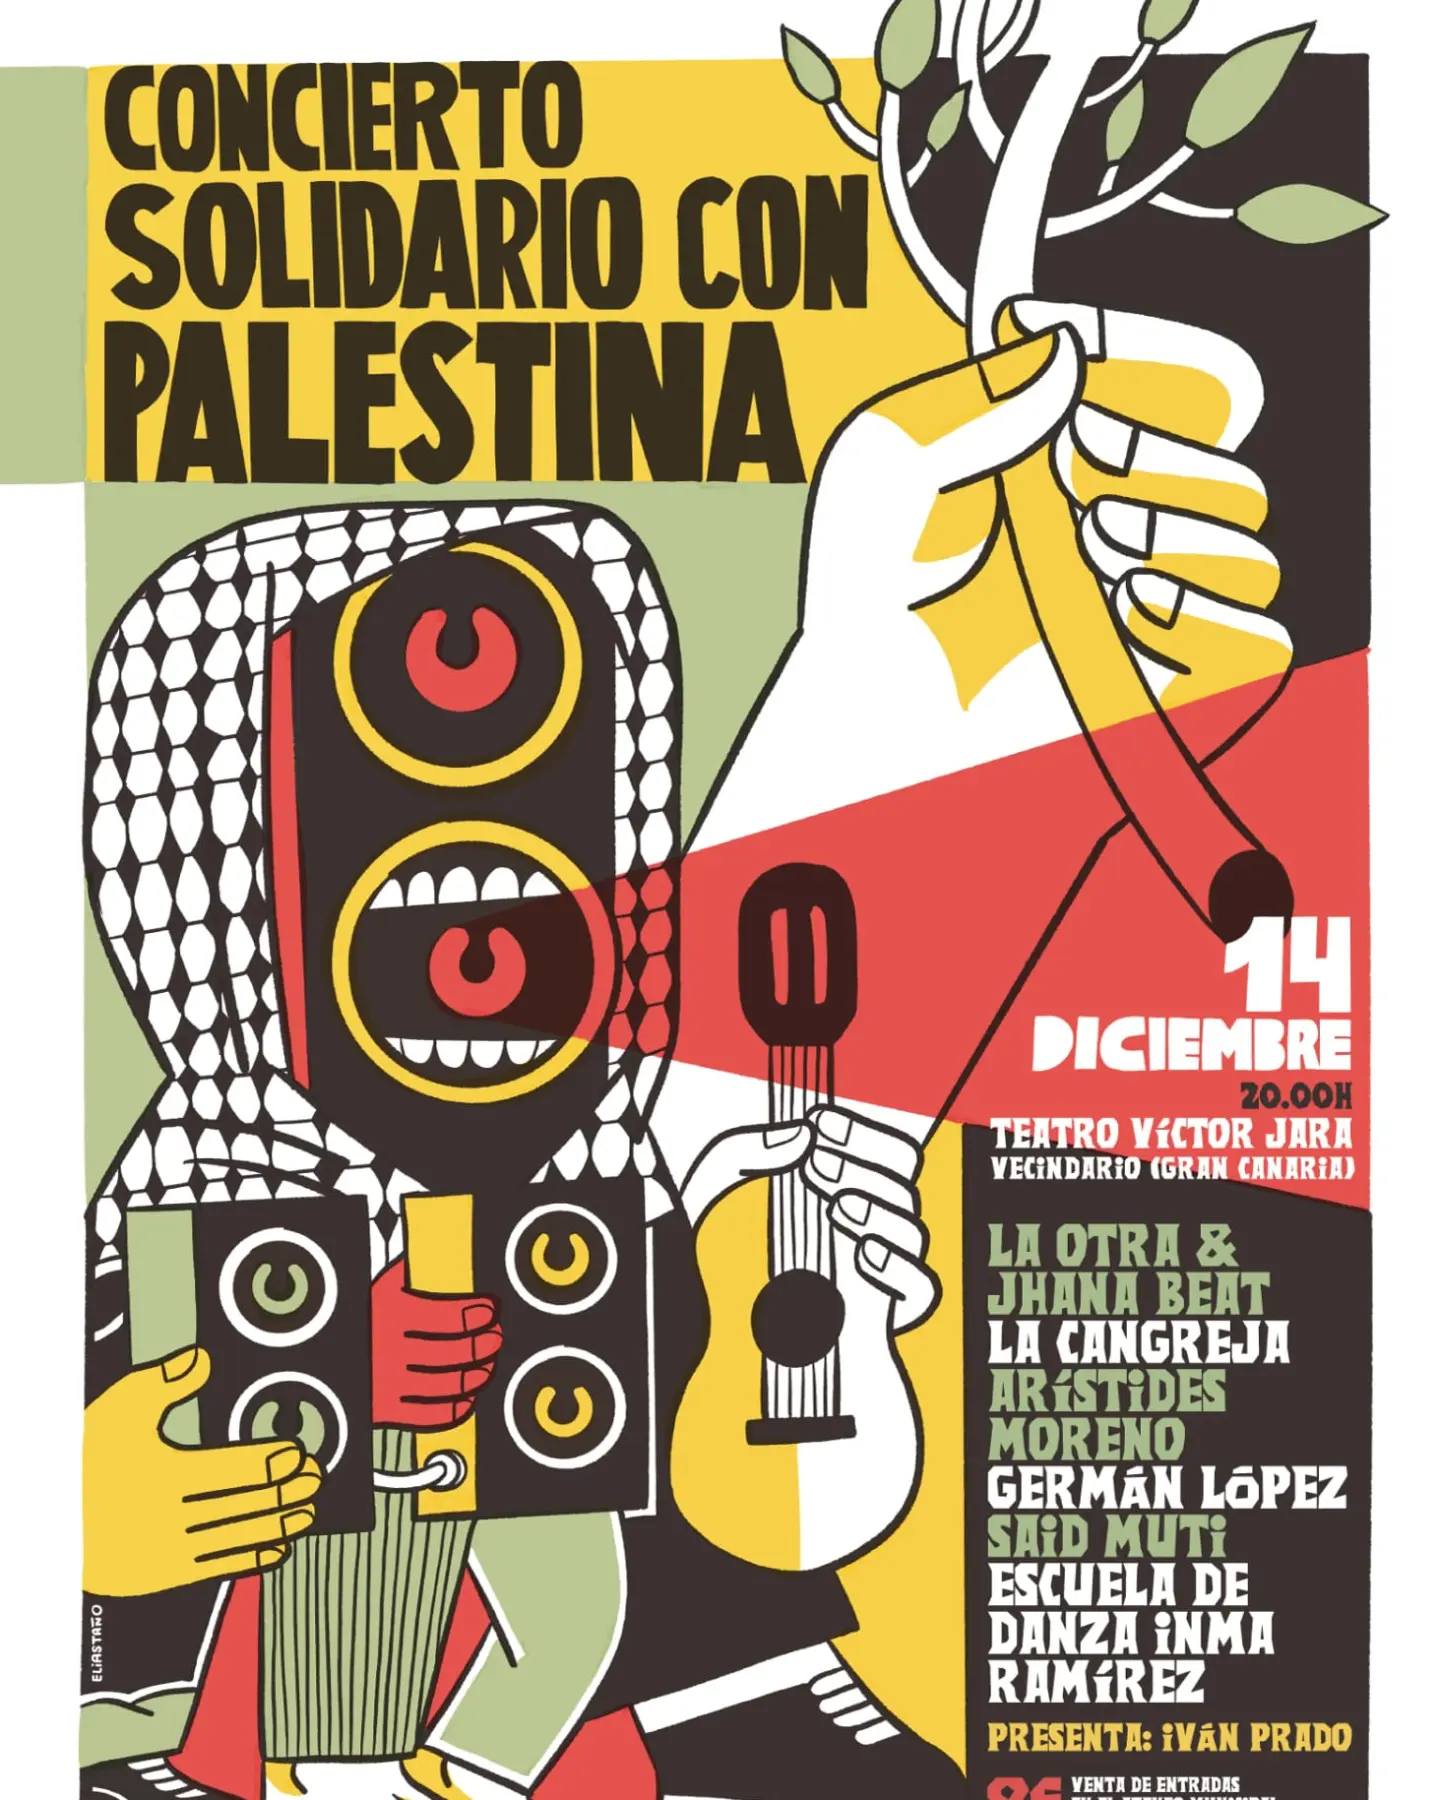 Arístides Moreno, Germán López y La Cangreja en el concierto por Palestina este jueves en el teatro VíctorJara 